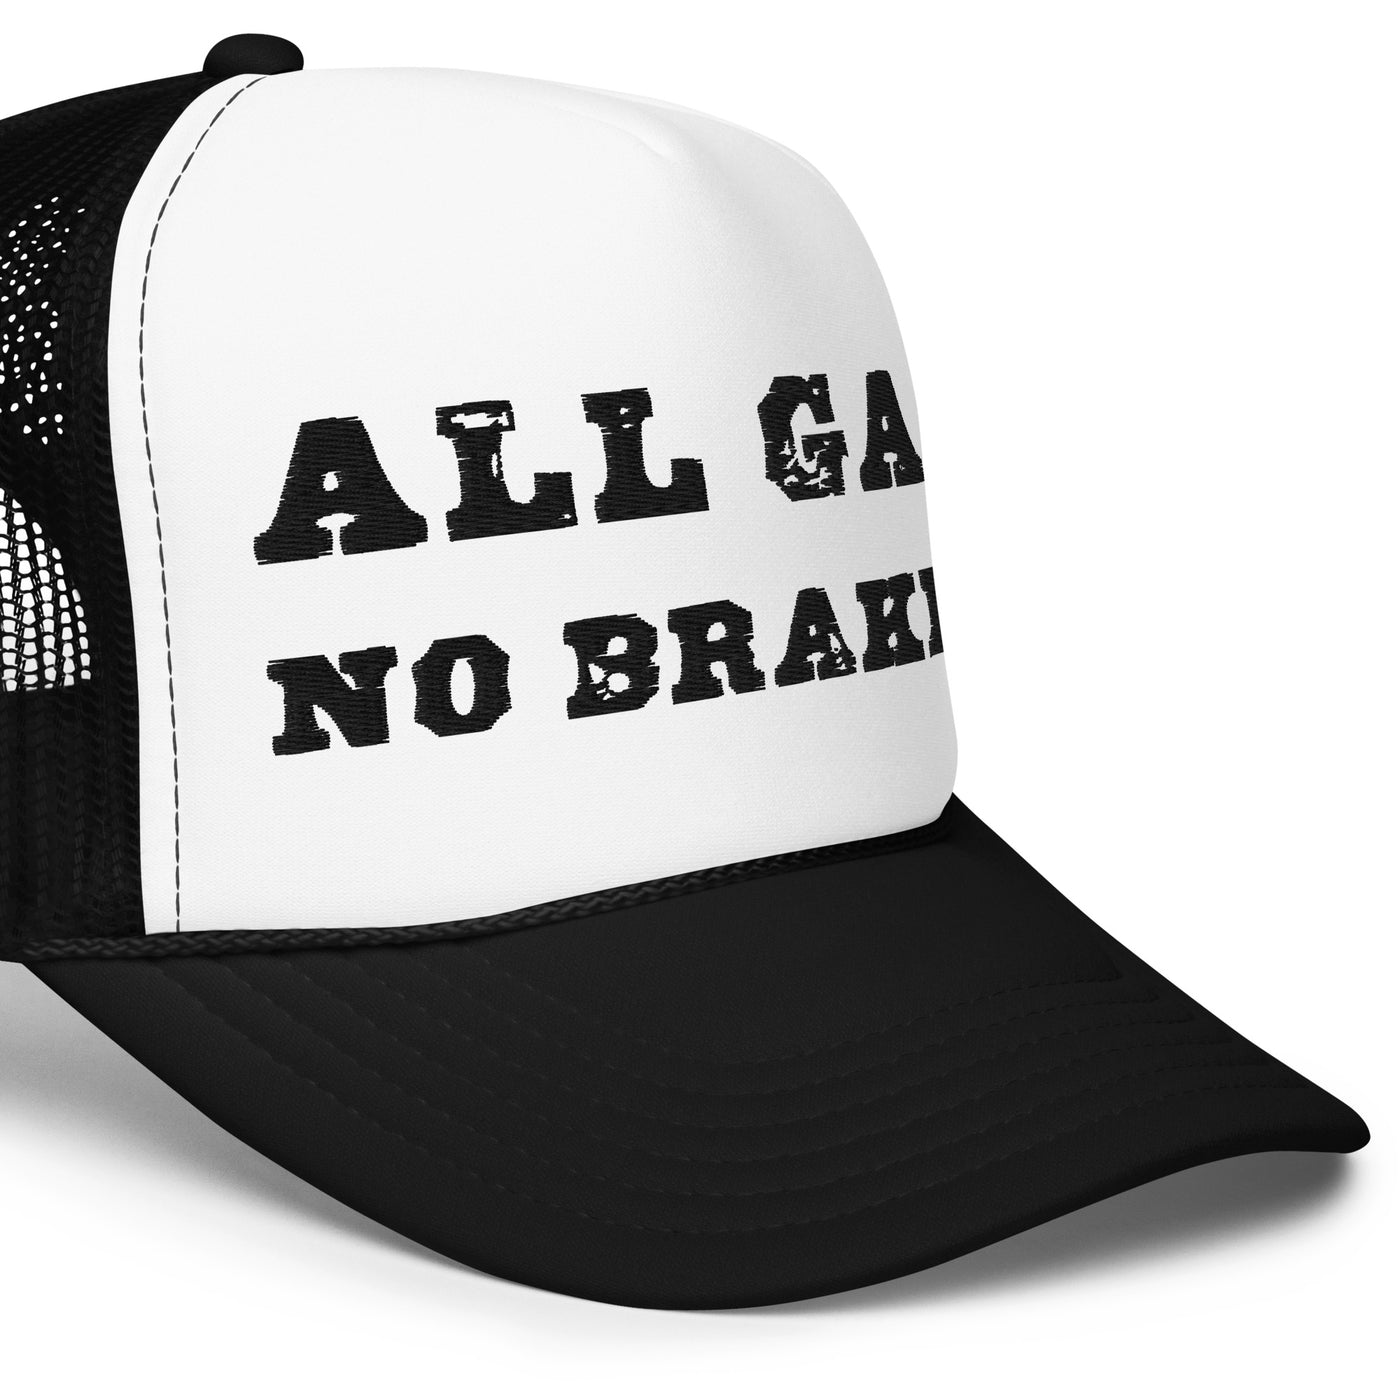 All Gas No Brakes Foam Trucker Hat